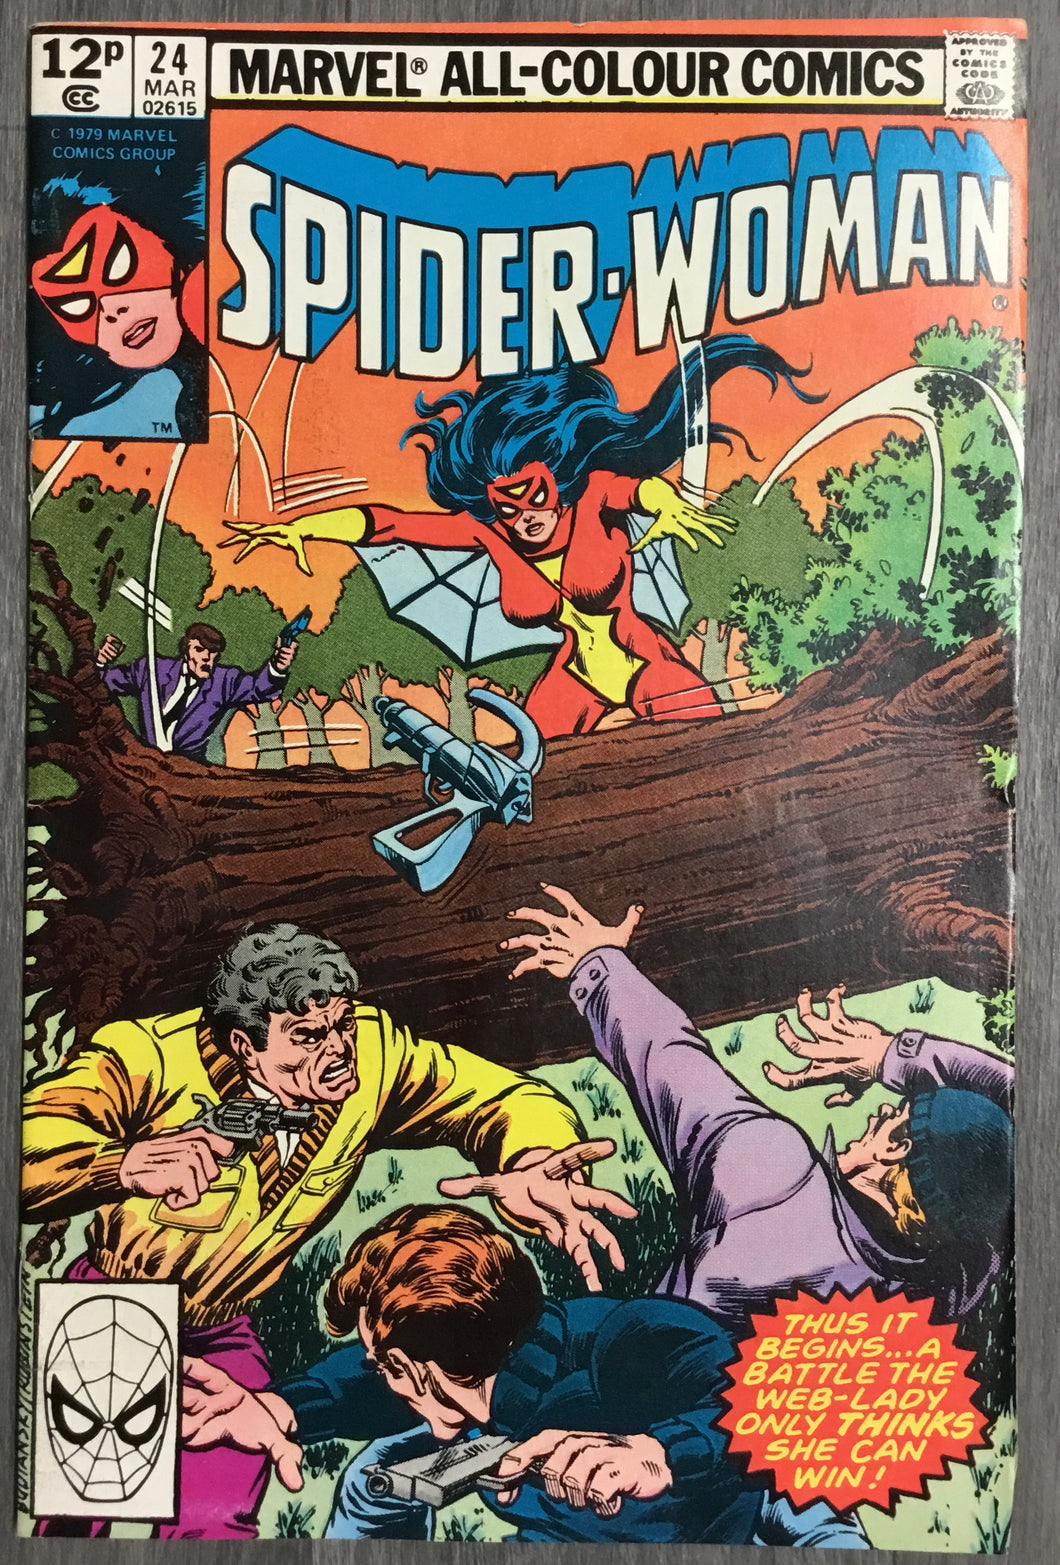 Spider-Woman No. #24 1980 Marvel Comics